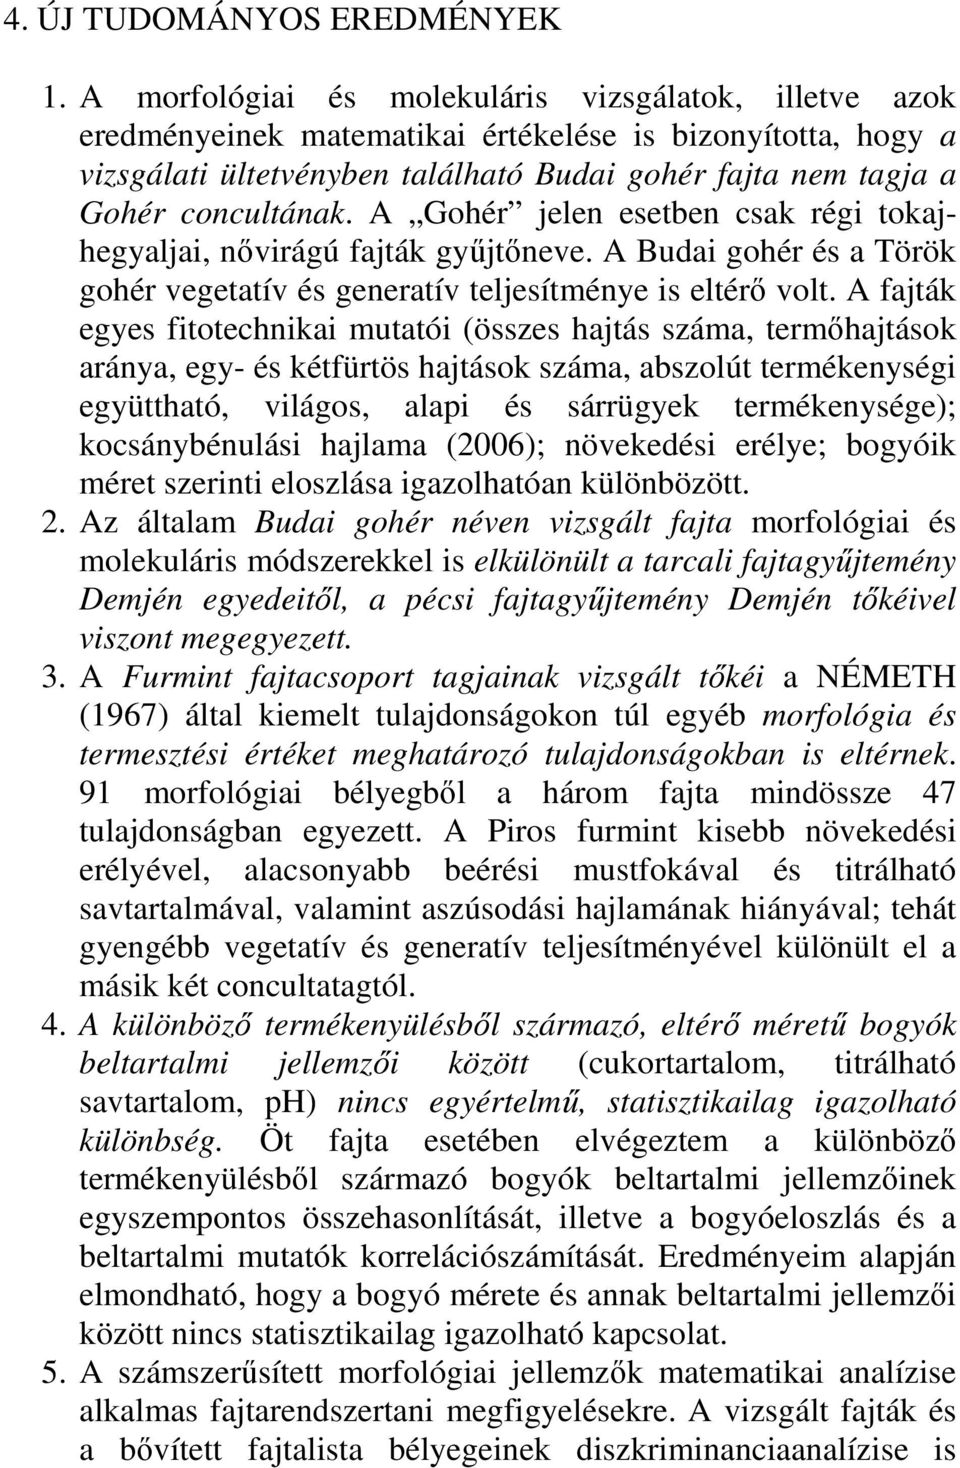 A Gohér jelen esetben csak régi tokajhegyaljai, nıvirágú fajták győjtıneve. A Budai gohér és a Török gohér vegetatív és generatív teljesítménye is eltérı volt.